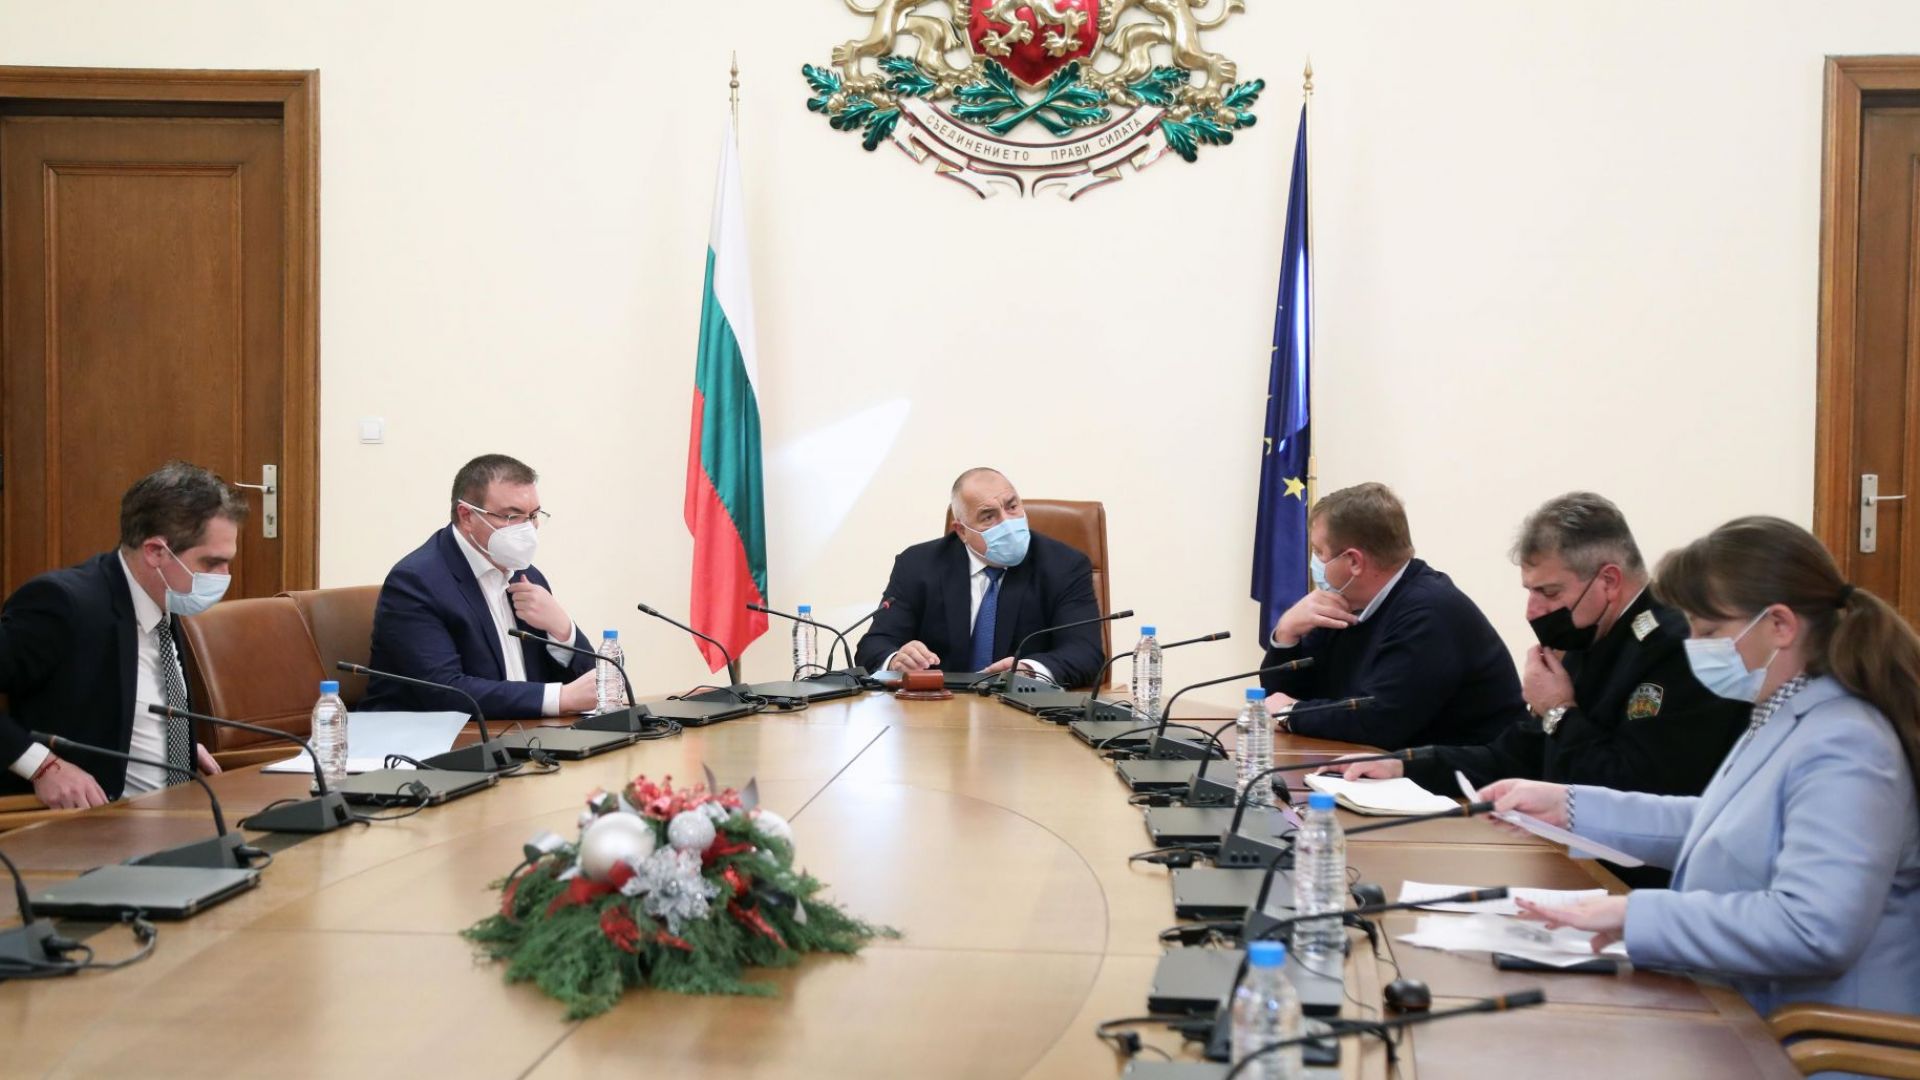 Борисов: Изпълнихме ангажиментите си за повишаване на доходите в пандемията